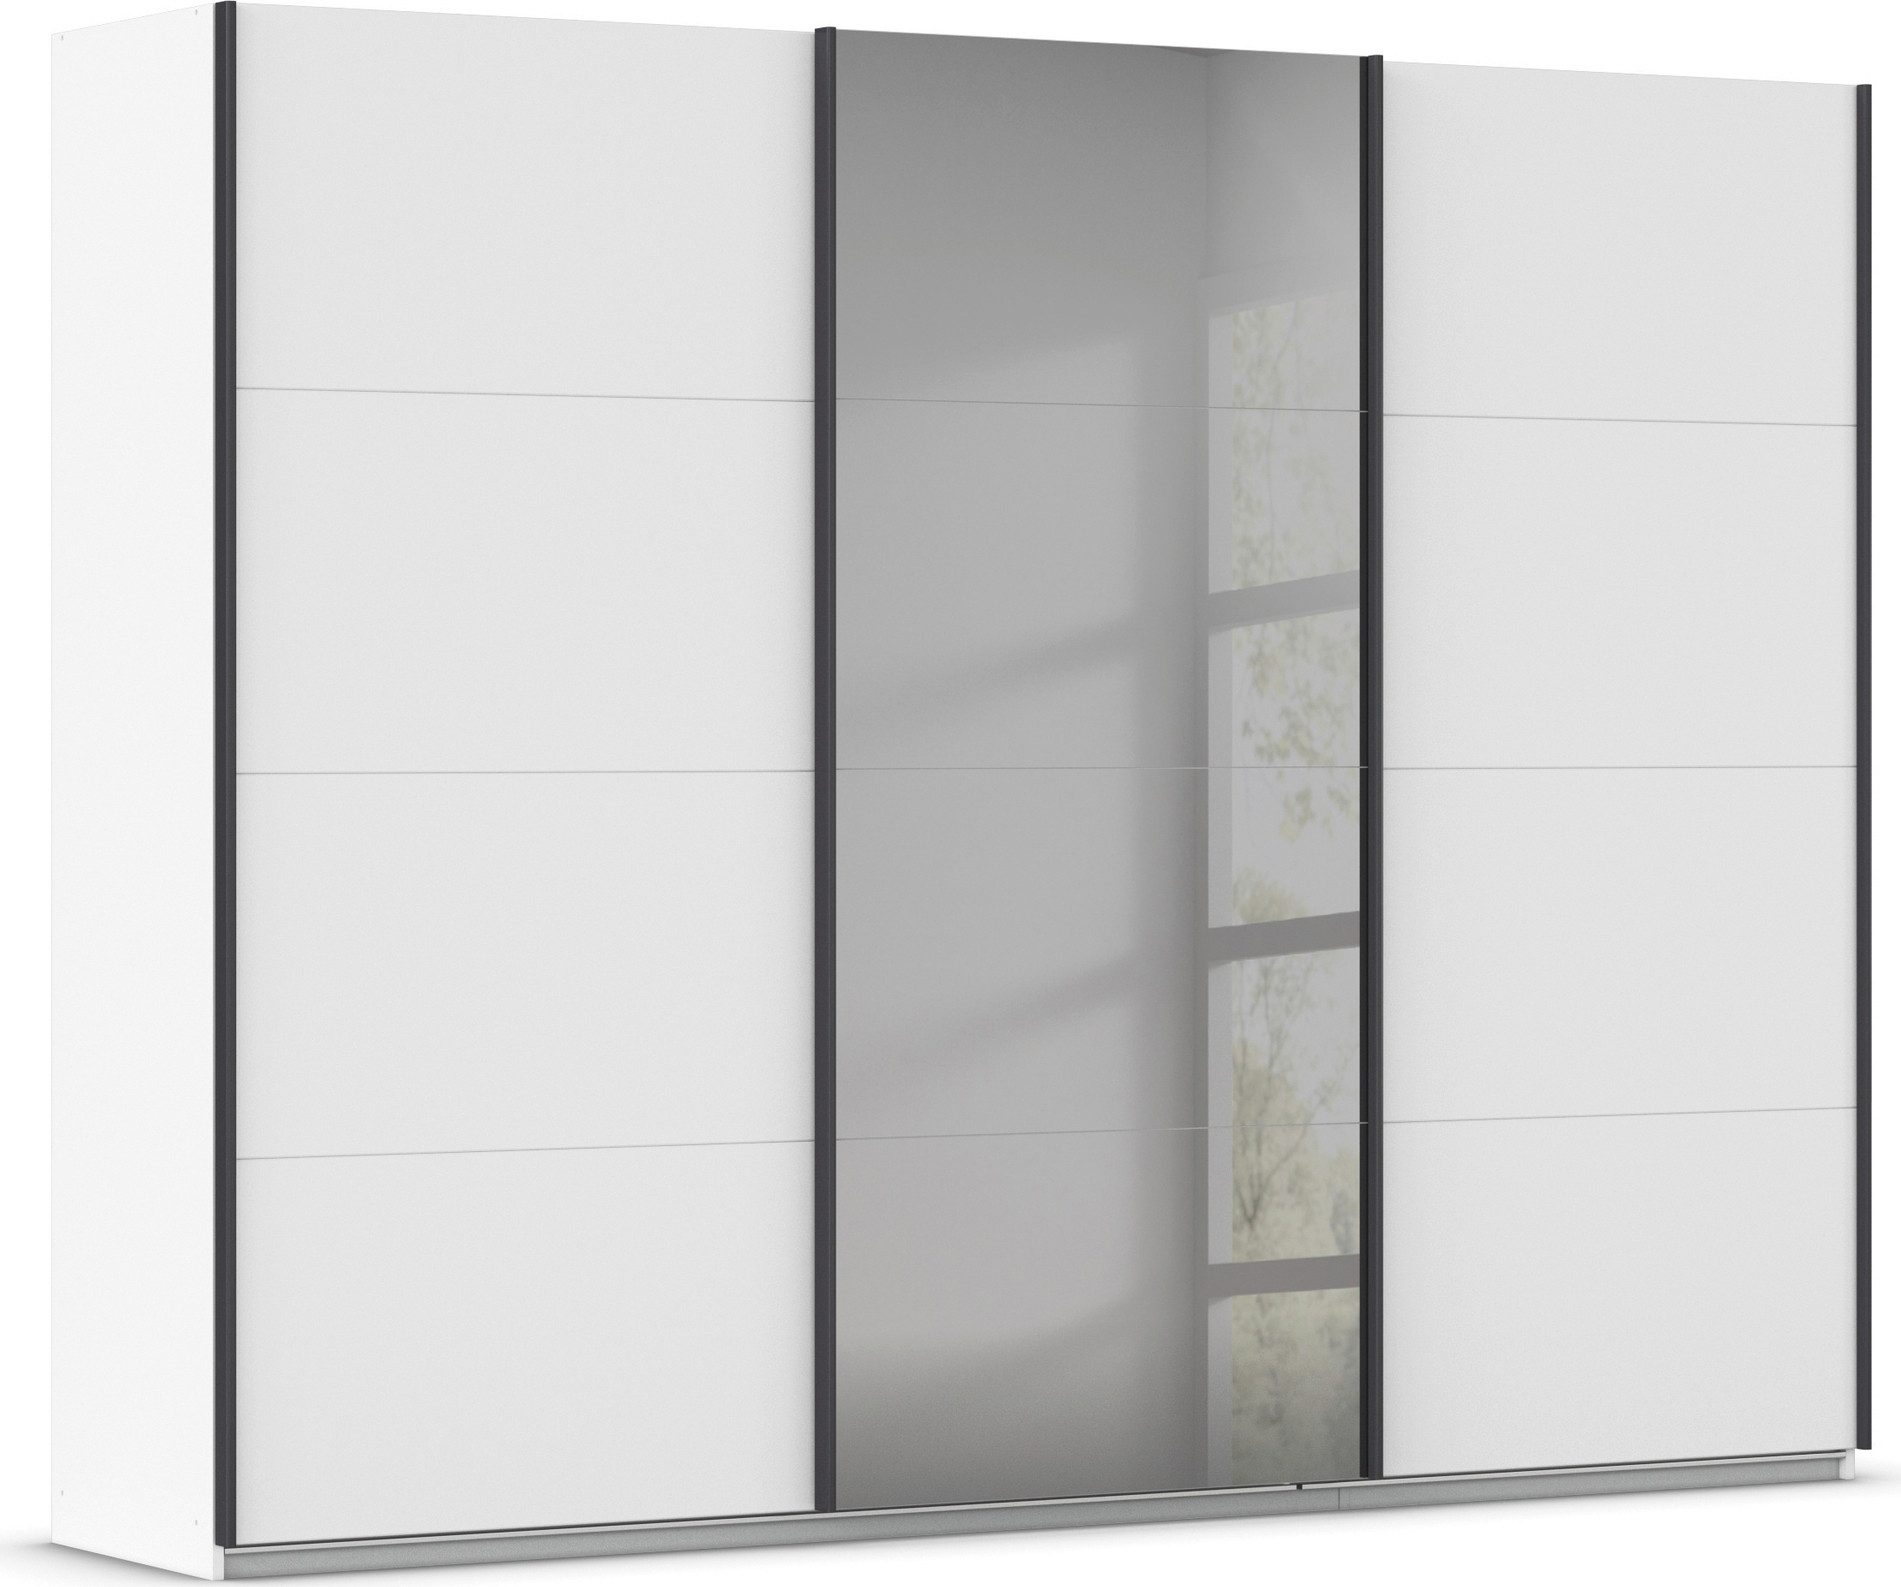 INOSIGN Schwebetürenschrank Ferris Schrank Garderobe Breite 2,71m BESTSELLER Schlafzimmerschrank Kleiderschrank mit Spiegel in 3 Ausführungen BASIC/CLASSIC/PREMIUM